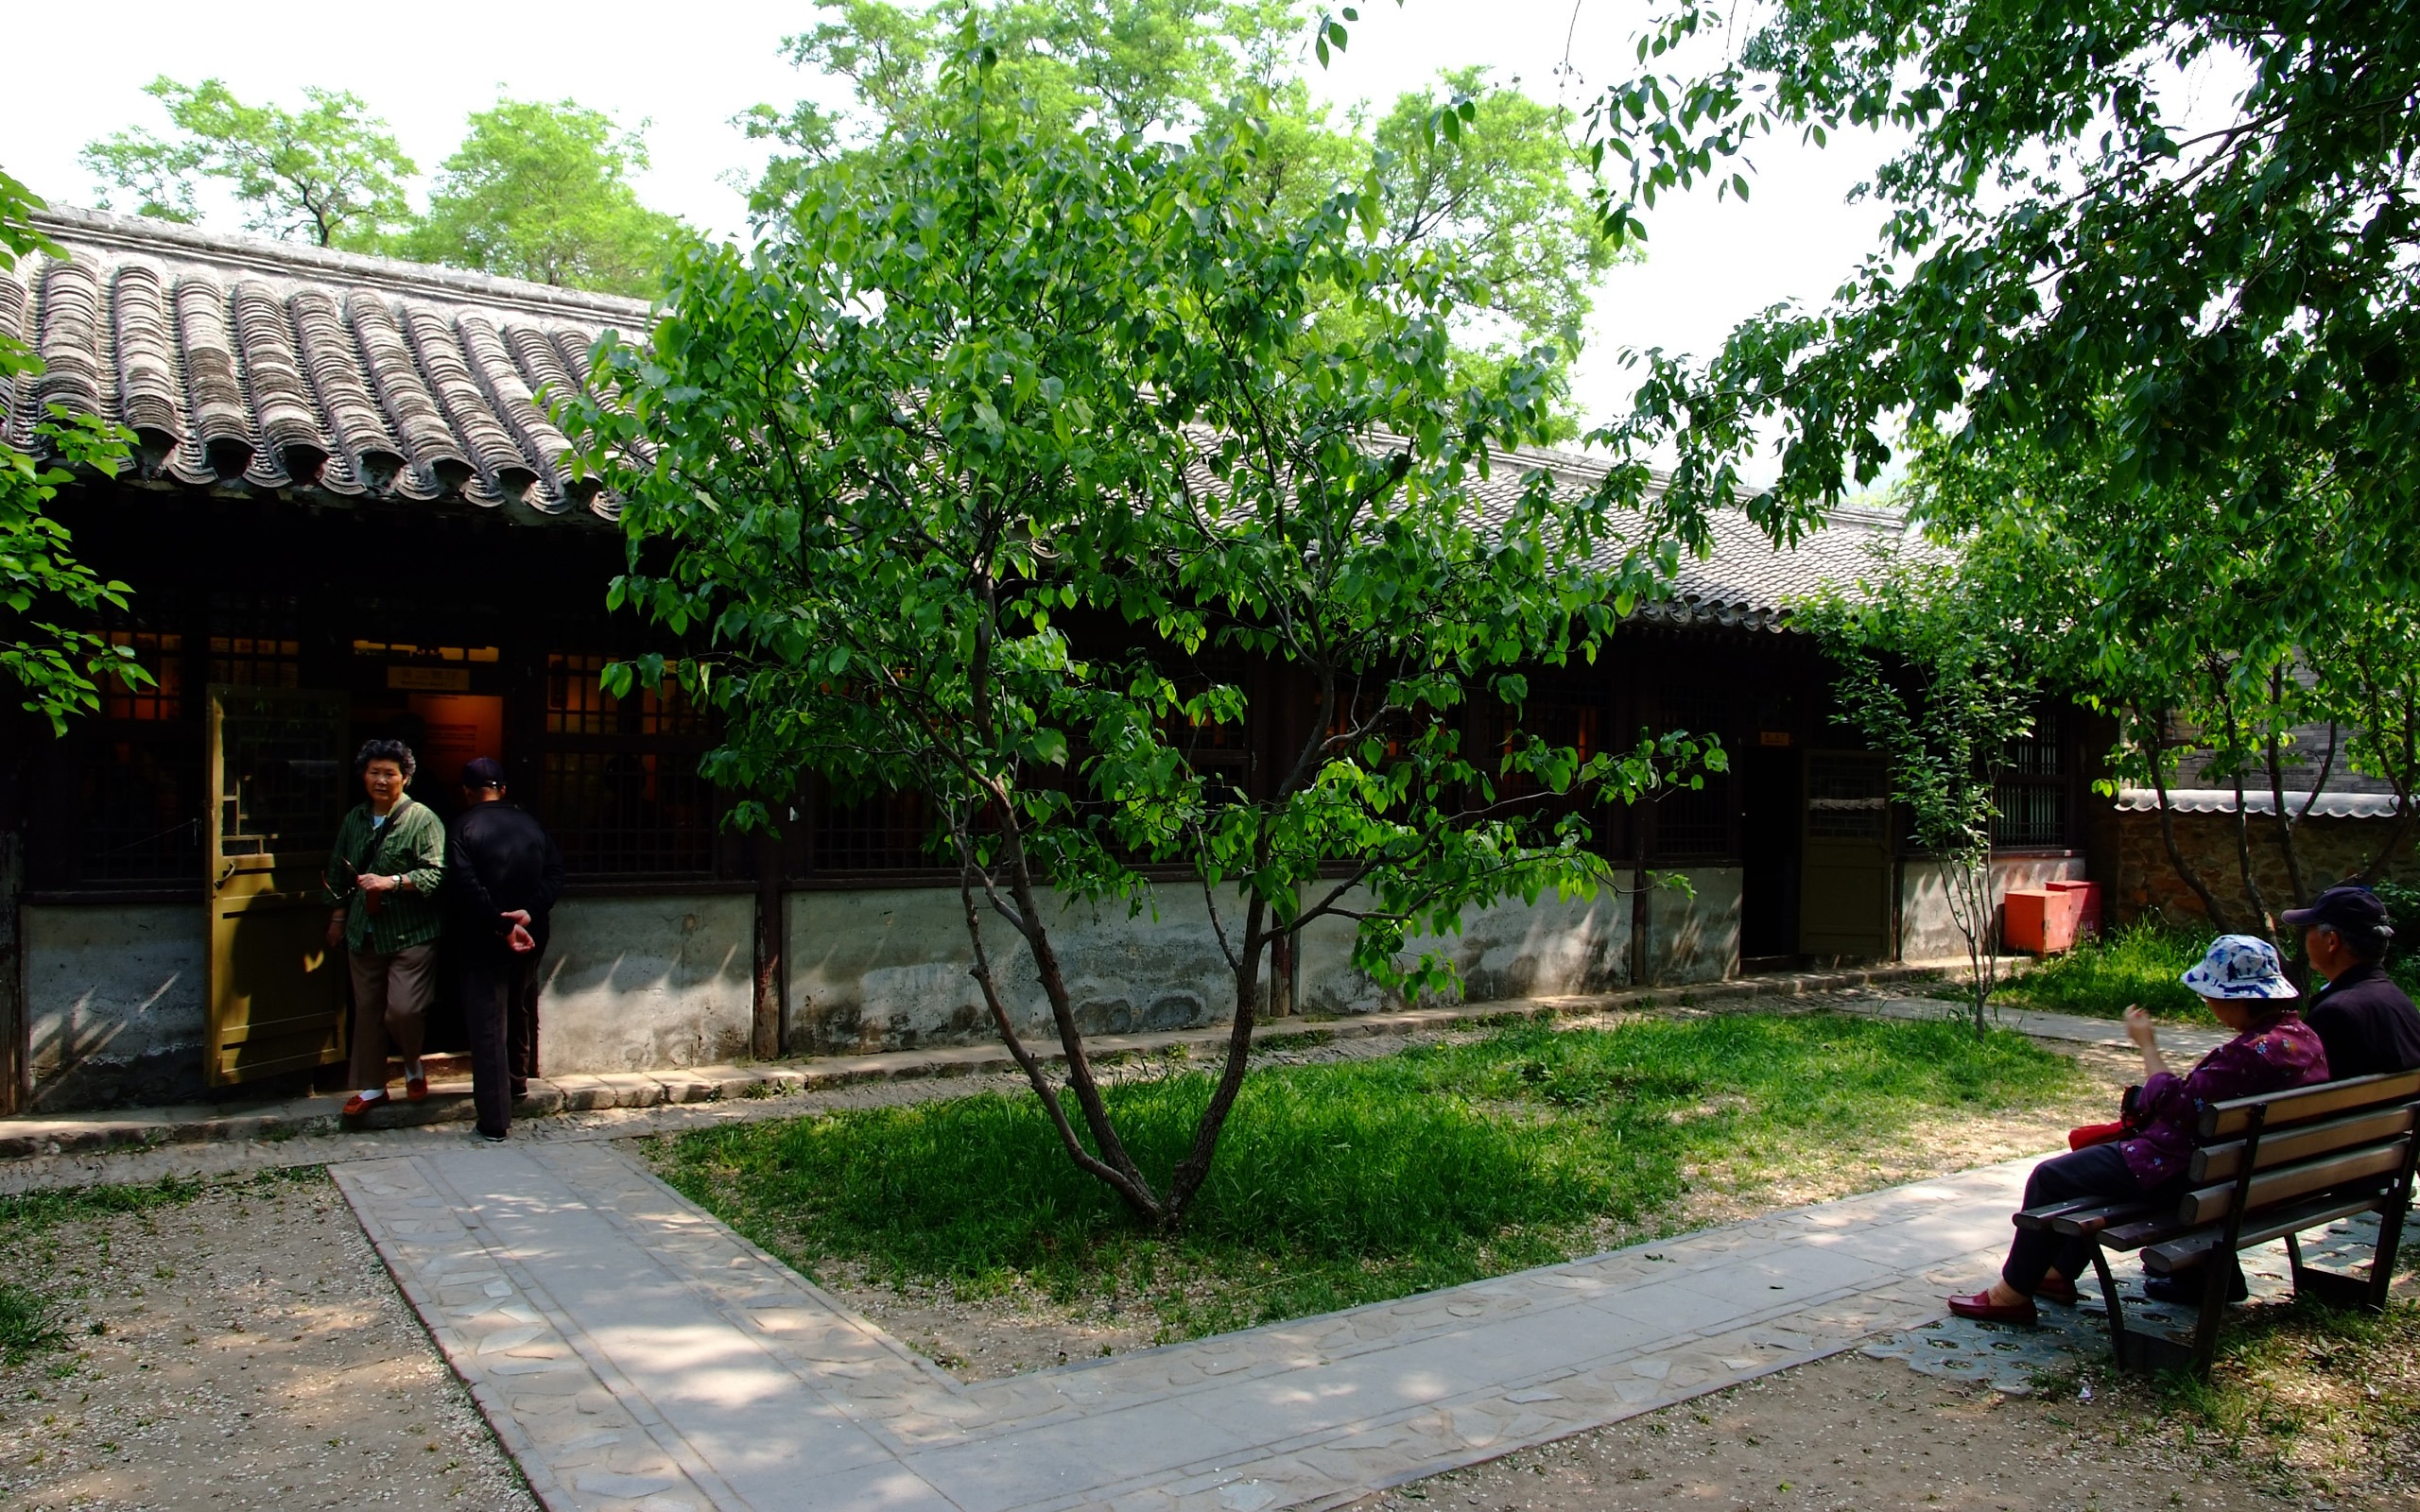 Xiangshan jardín principios del verano (obras barras de refuerzo) #18 - 2560x1600